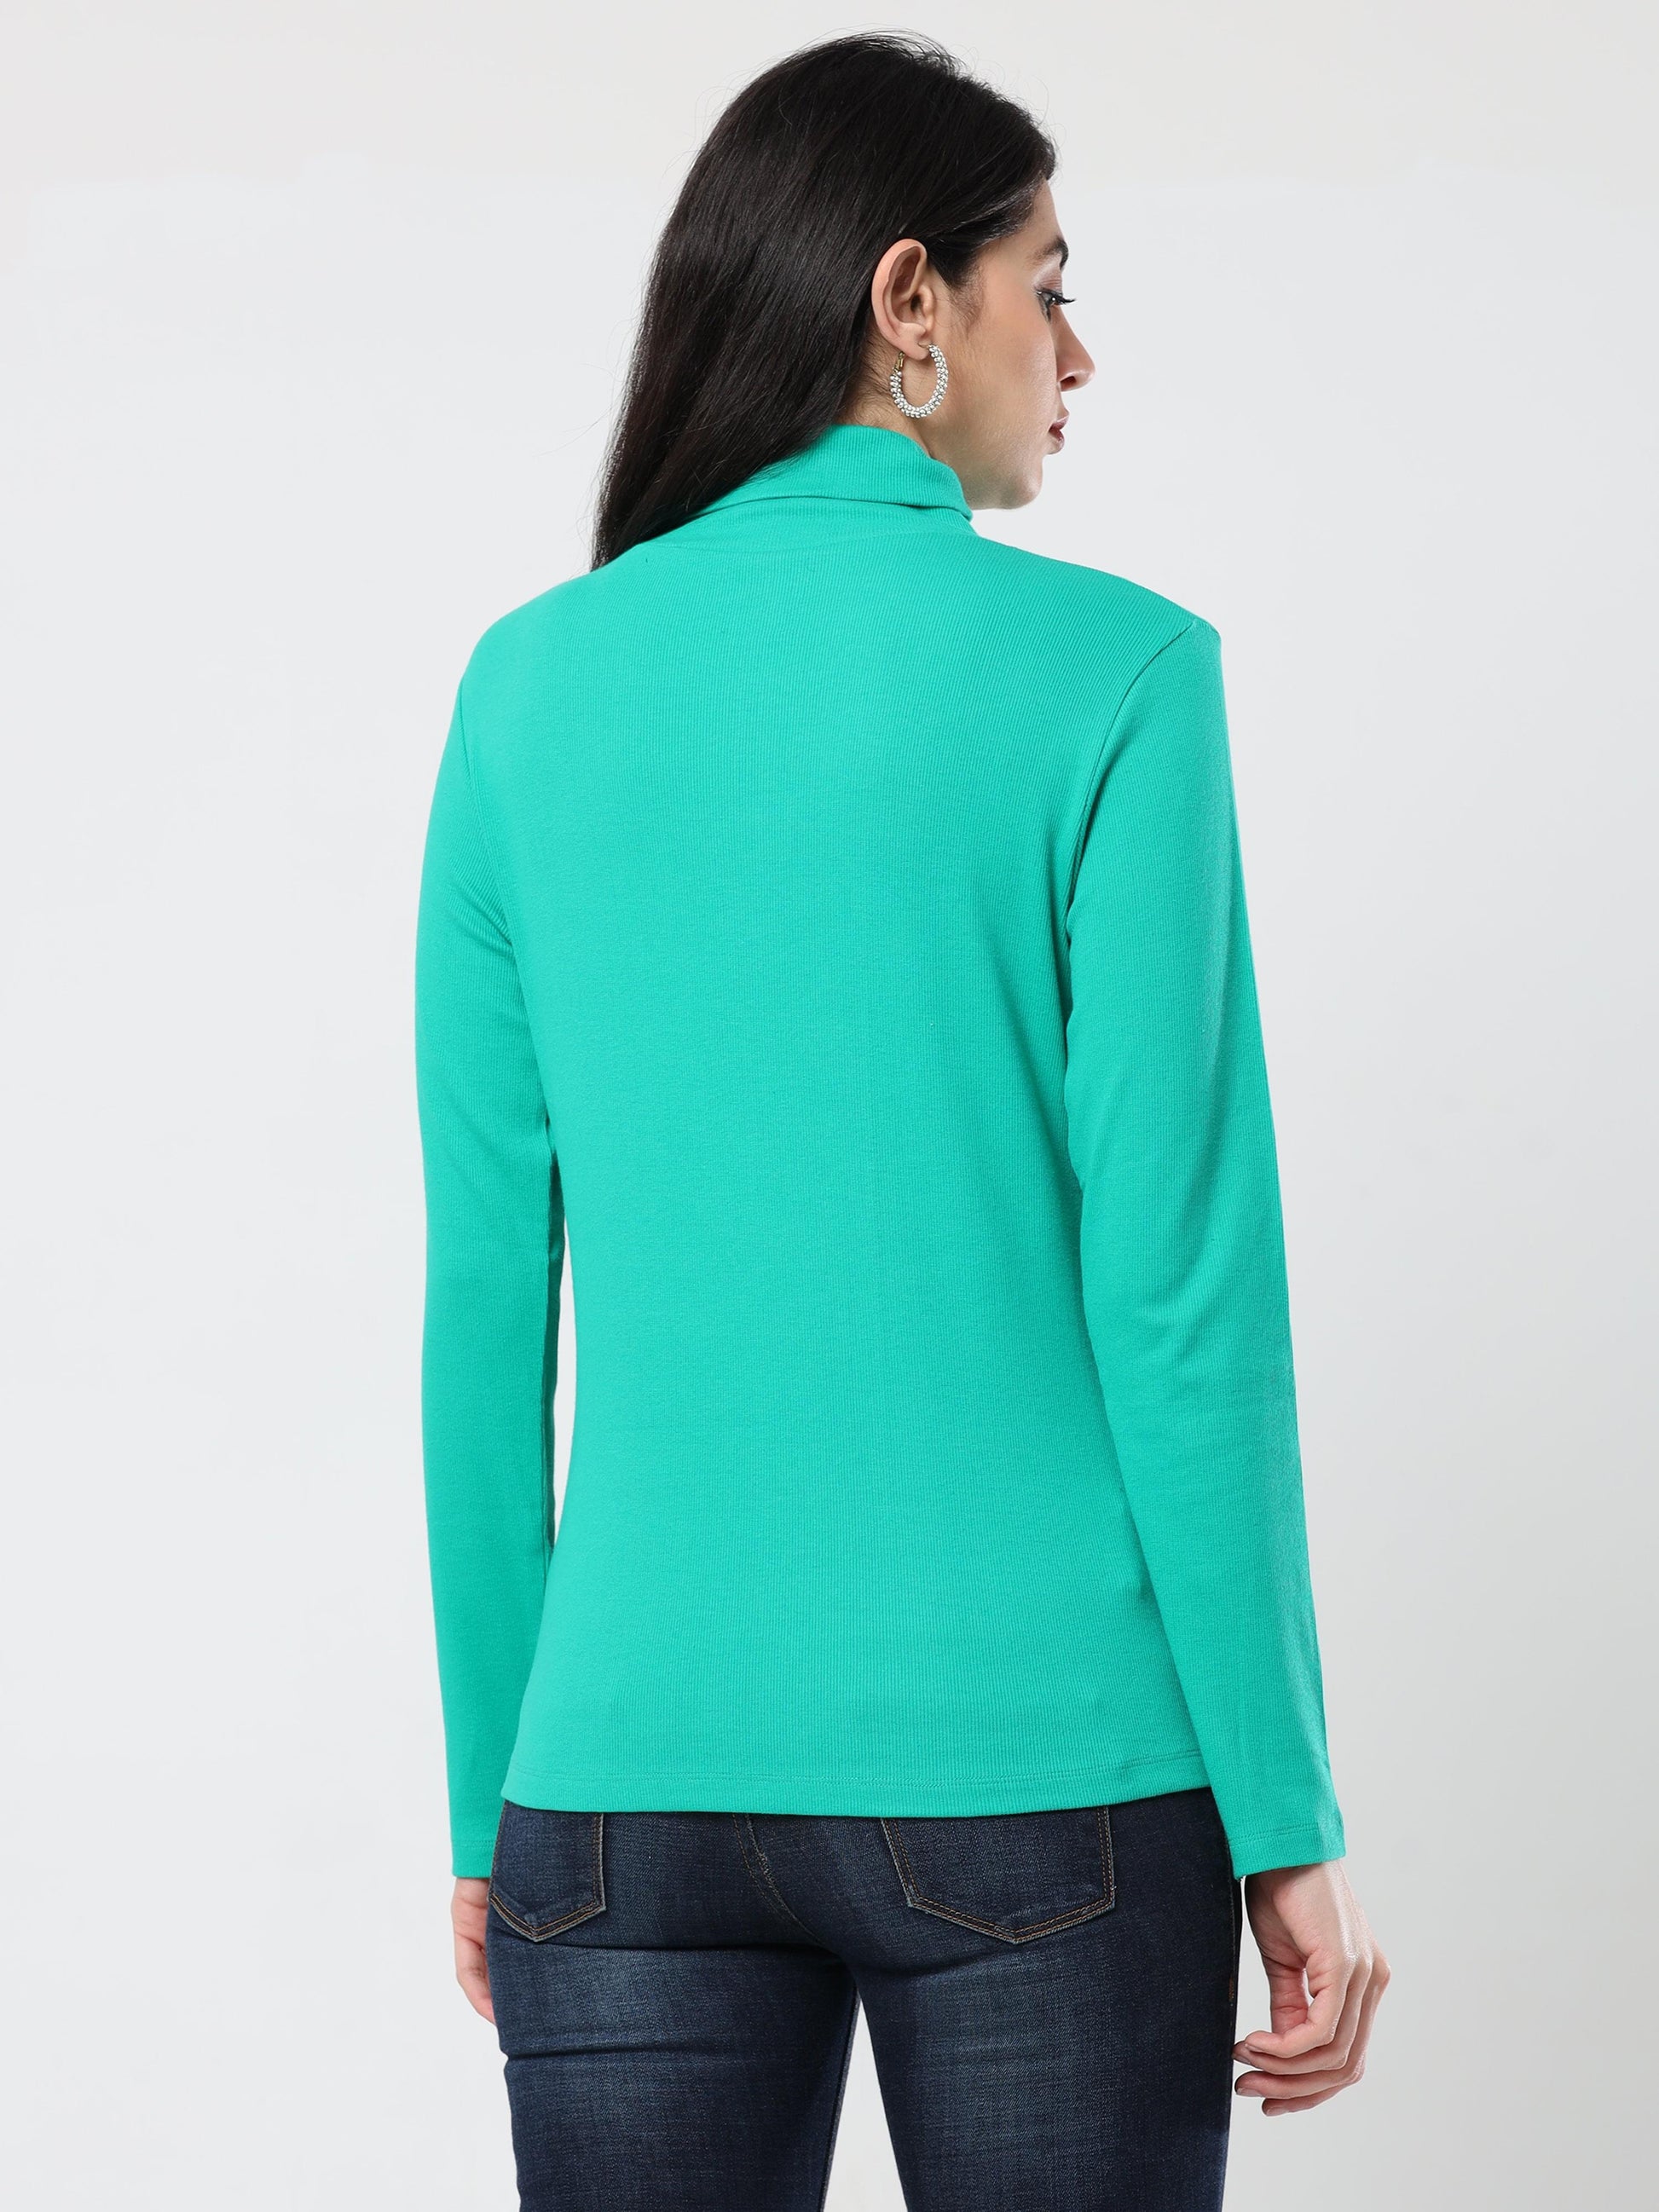 High Neck Full Sleeve Women's T-Shirt Green